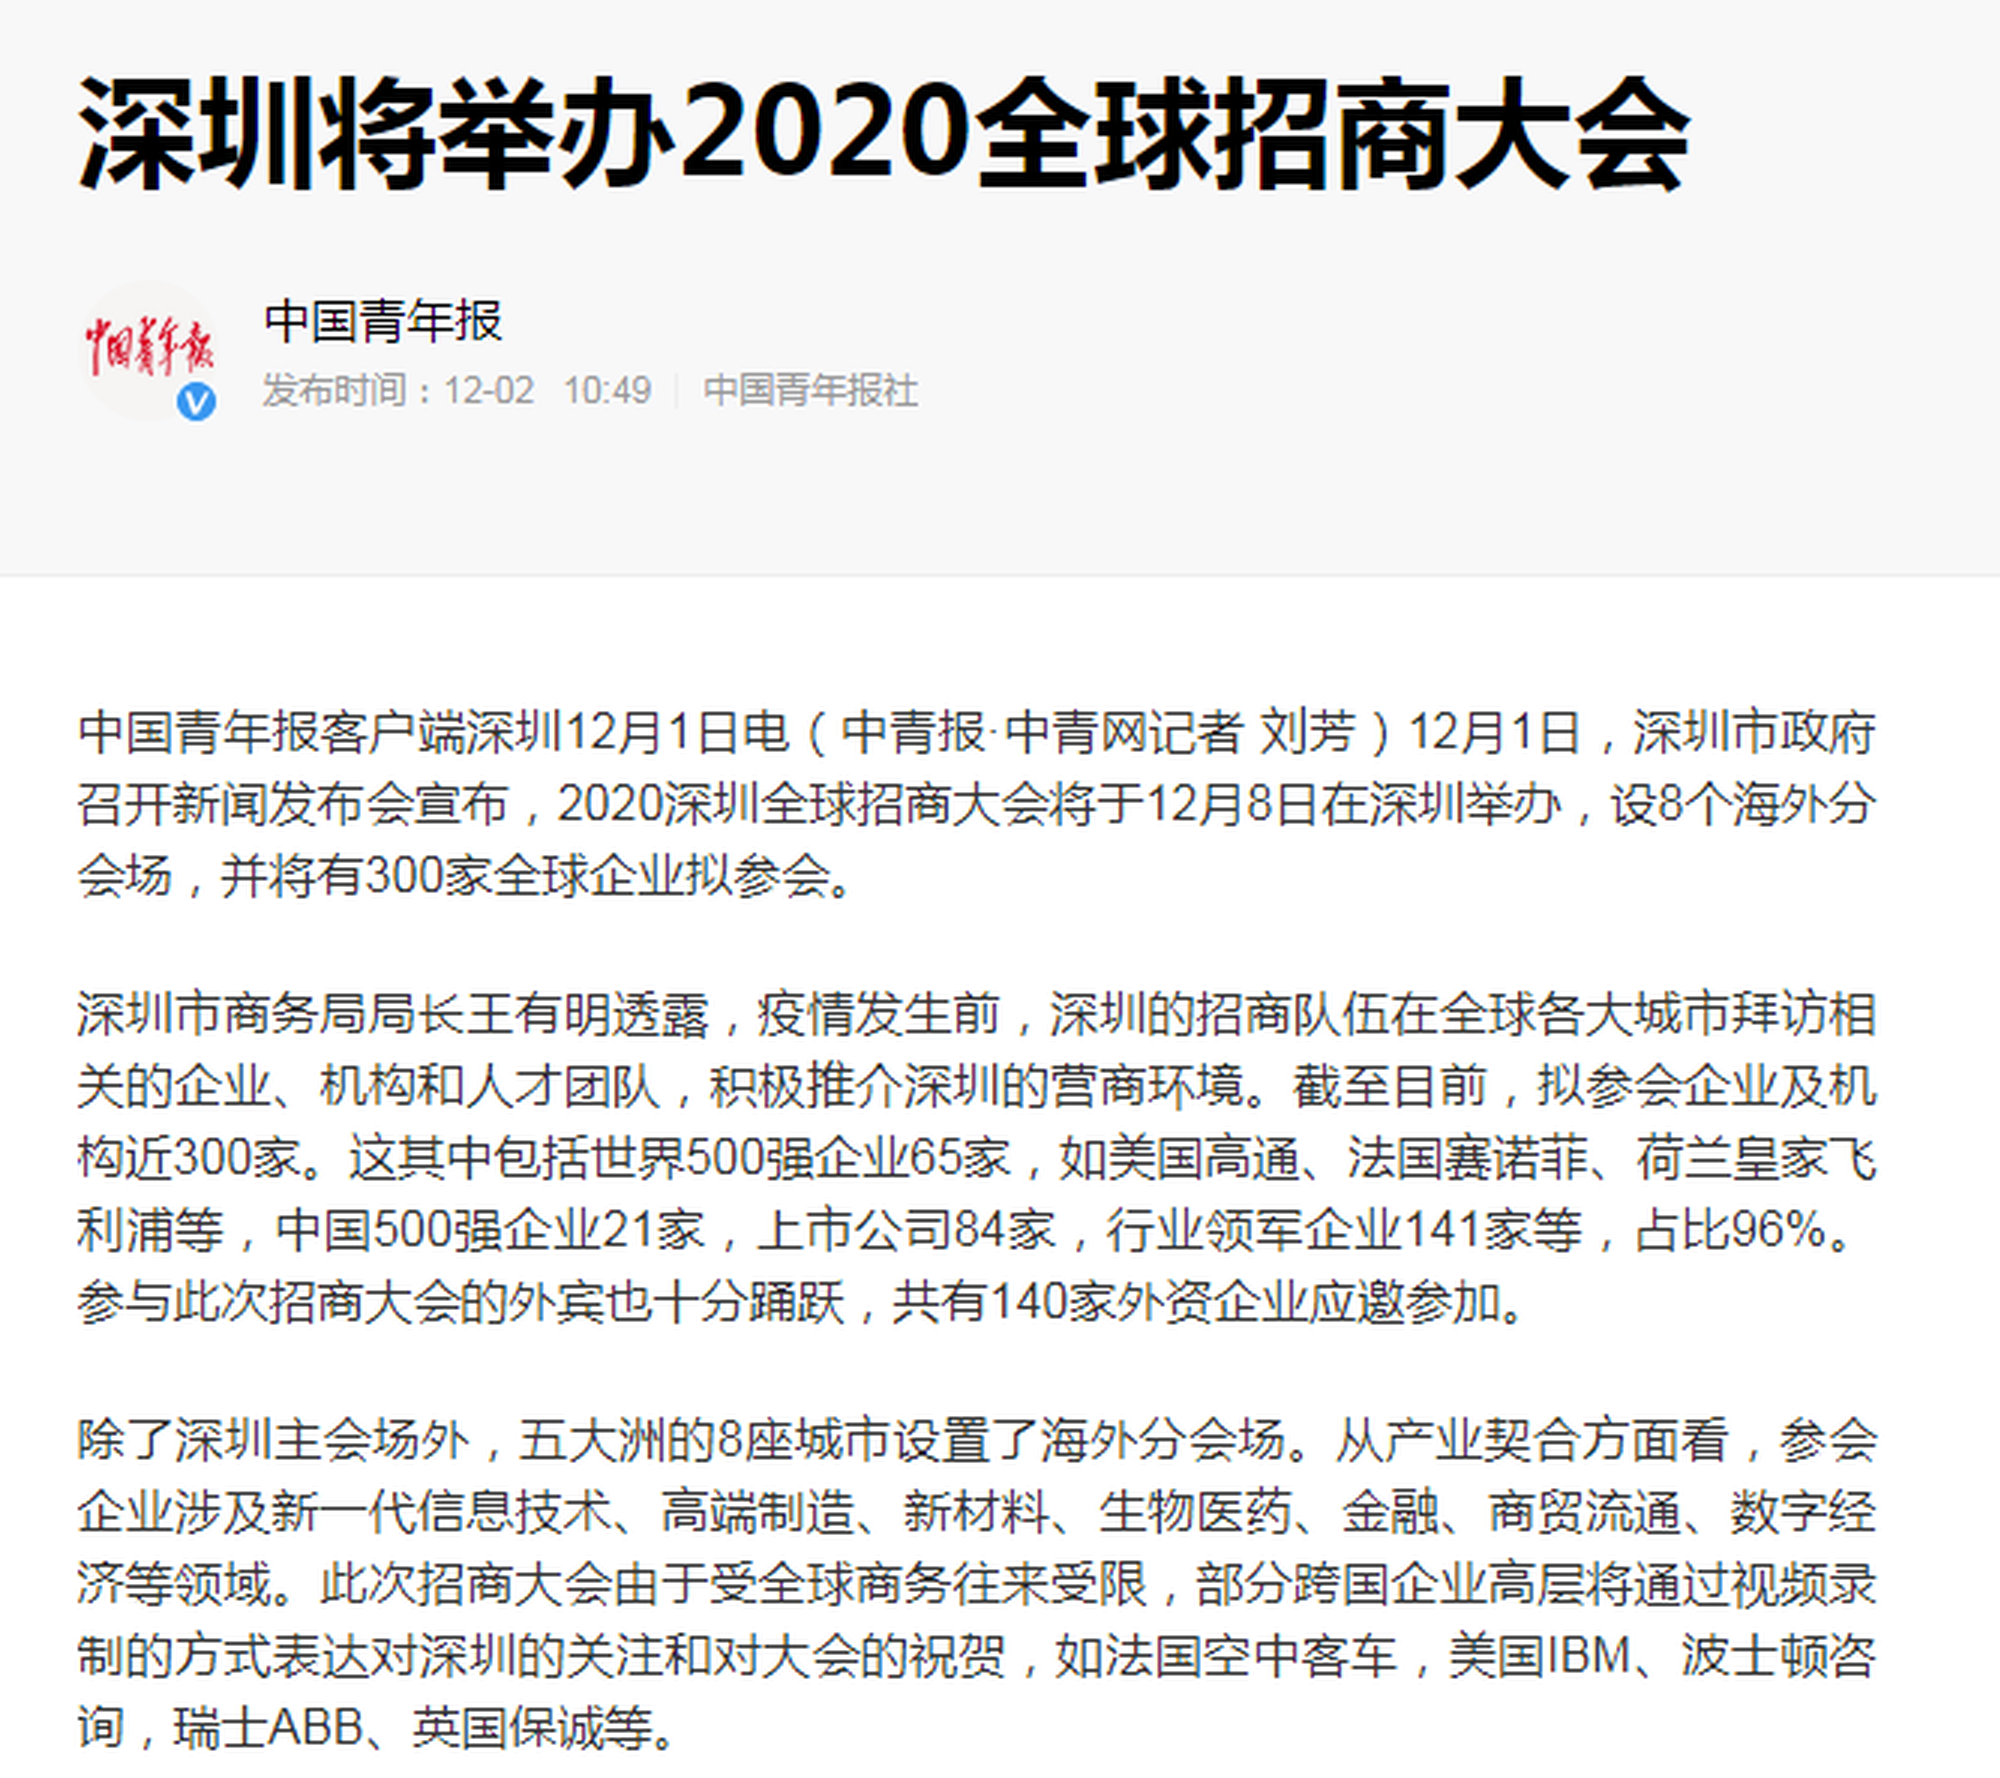 深圳将举办2020全球招商大会